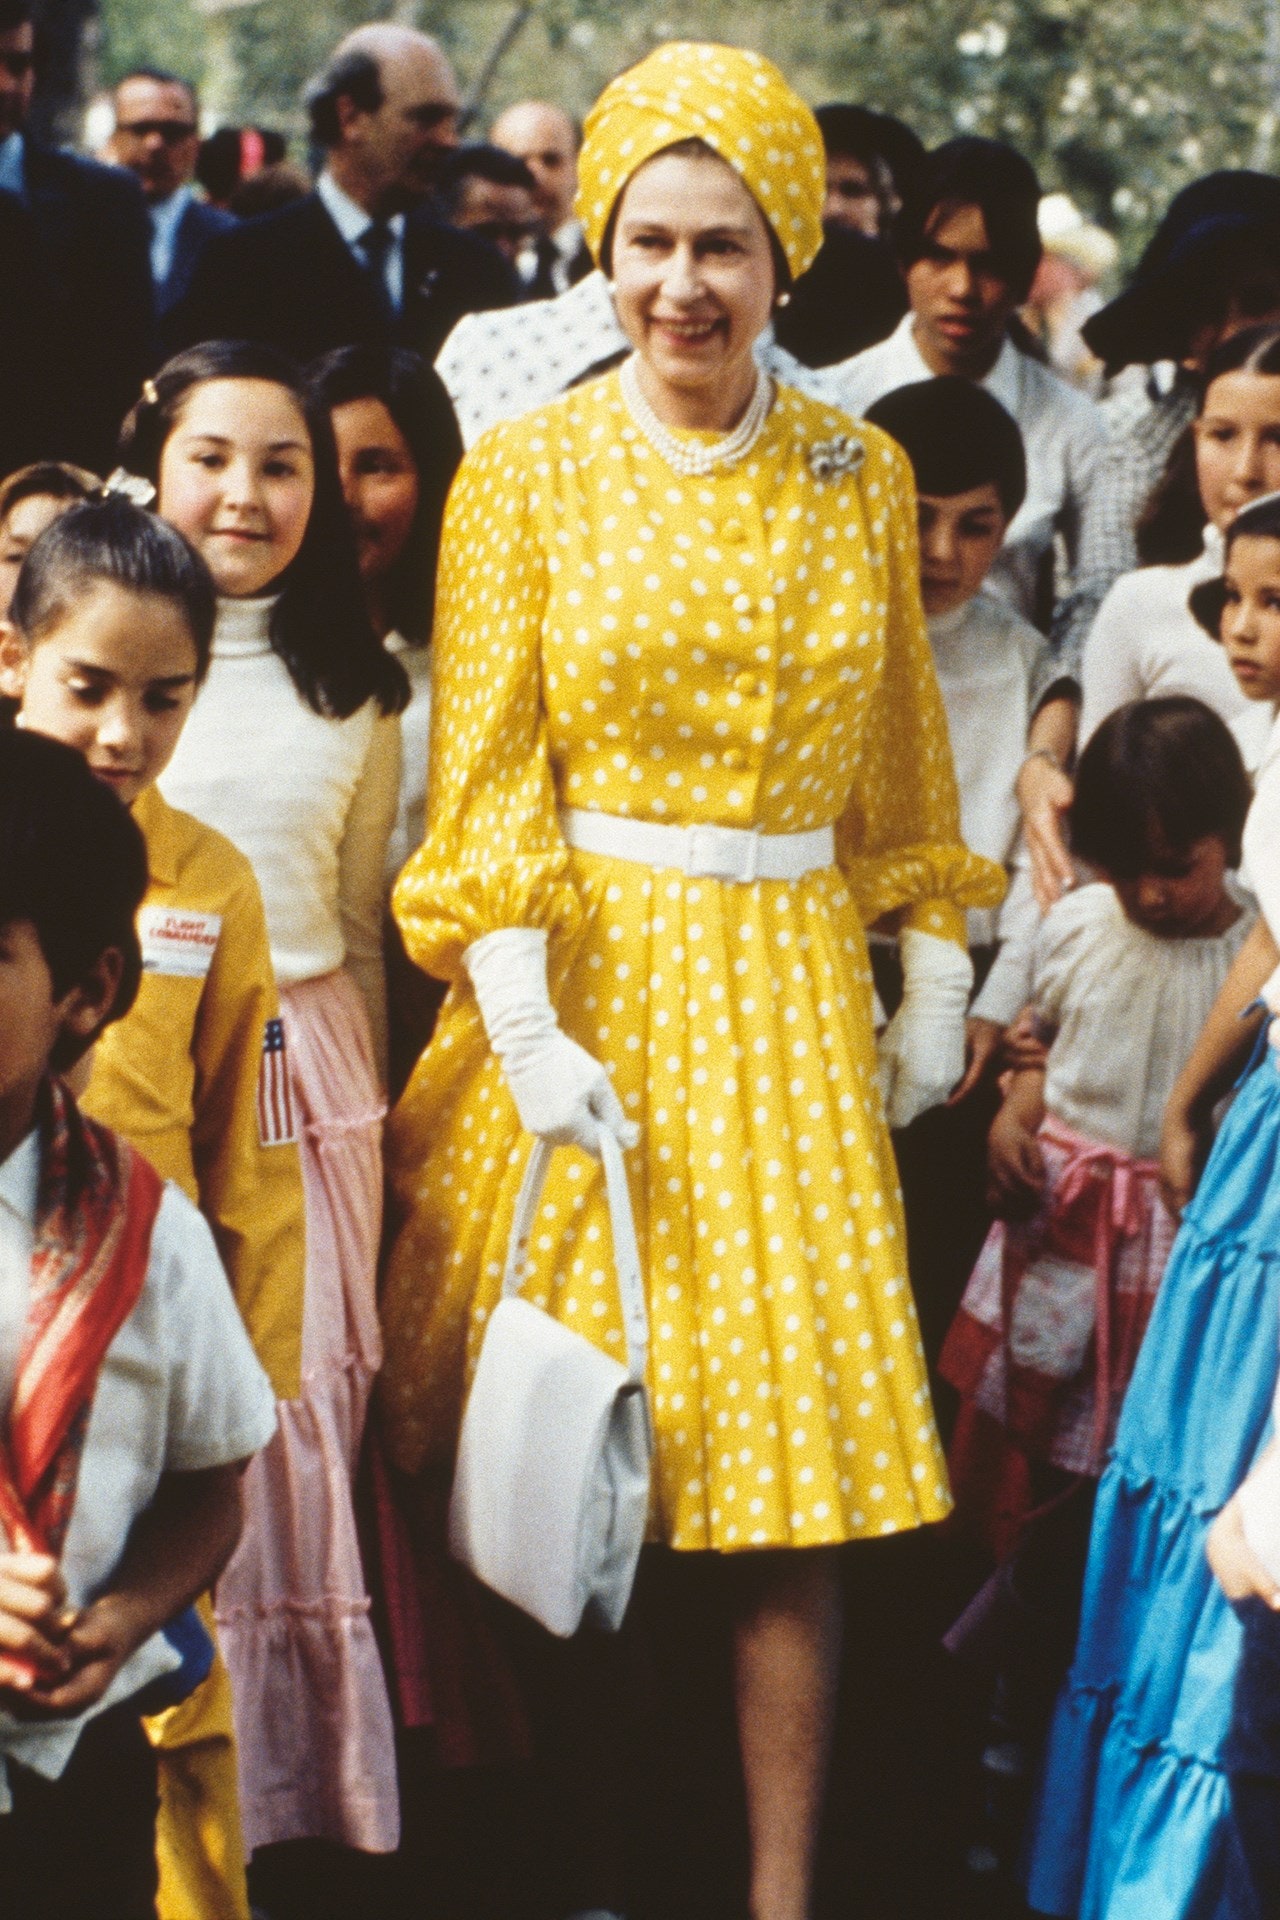 Tháng 2/1975, Nữ hoàng Elizabeth đã dành thời gian cùng một nhóm trẻ em địa phương trong chuyến thăm cấp nhà nước tới Mexico. Trong chiếc váy xếp ly in hoa cúc vạn thọ và một chiếc mũ kiểu khăn xếp giúp bà thêm phần sang trọng và cuốn hút.